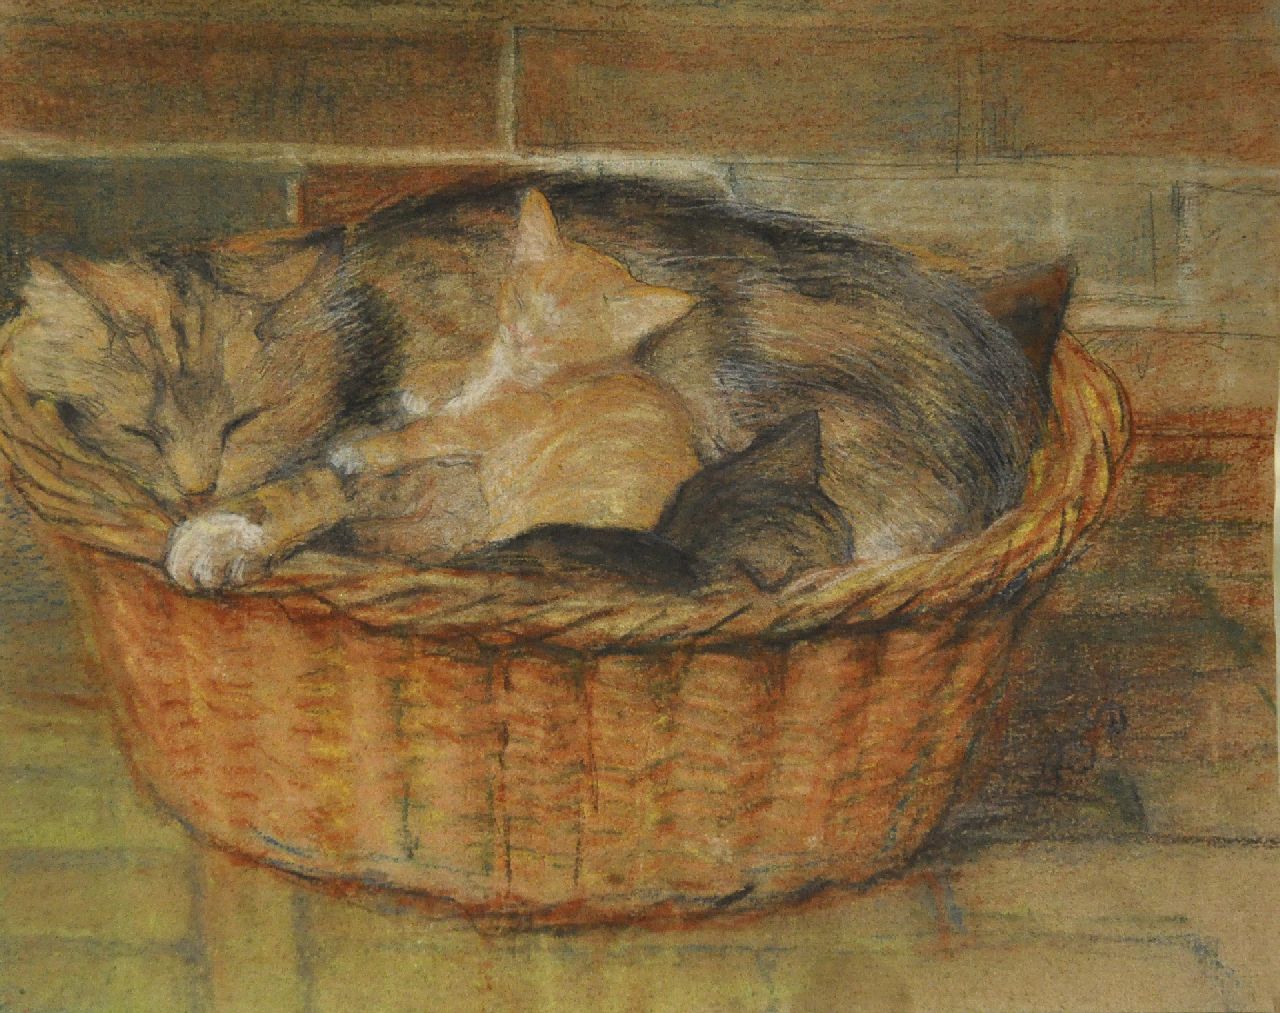 Dyserinck A.G.  | Adrienne Gertrude 'Attie' Dyserinck, Moederkat met kittens in een mand, pastel op papier 31,9 x 40,0 cm, gesigneerd rechtsonder met initialen